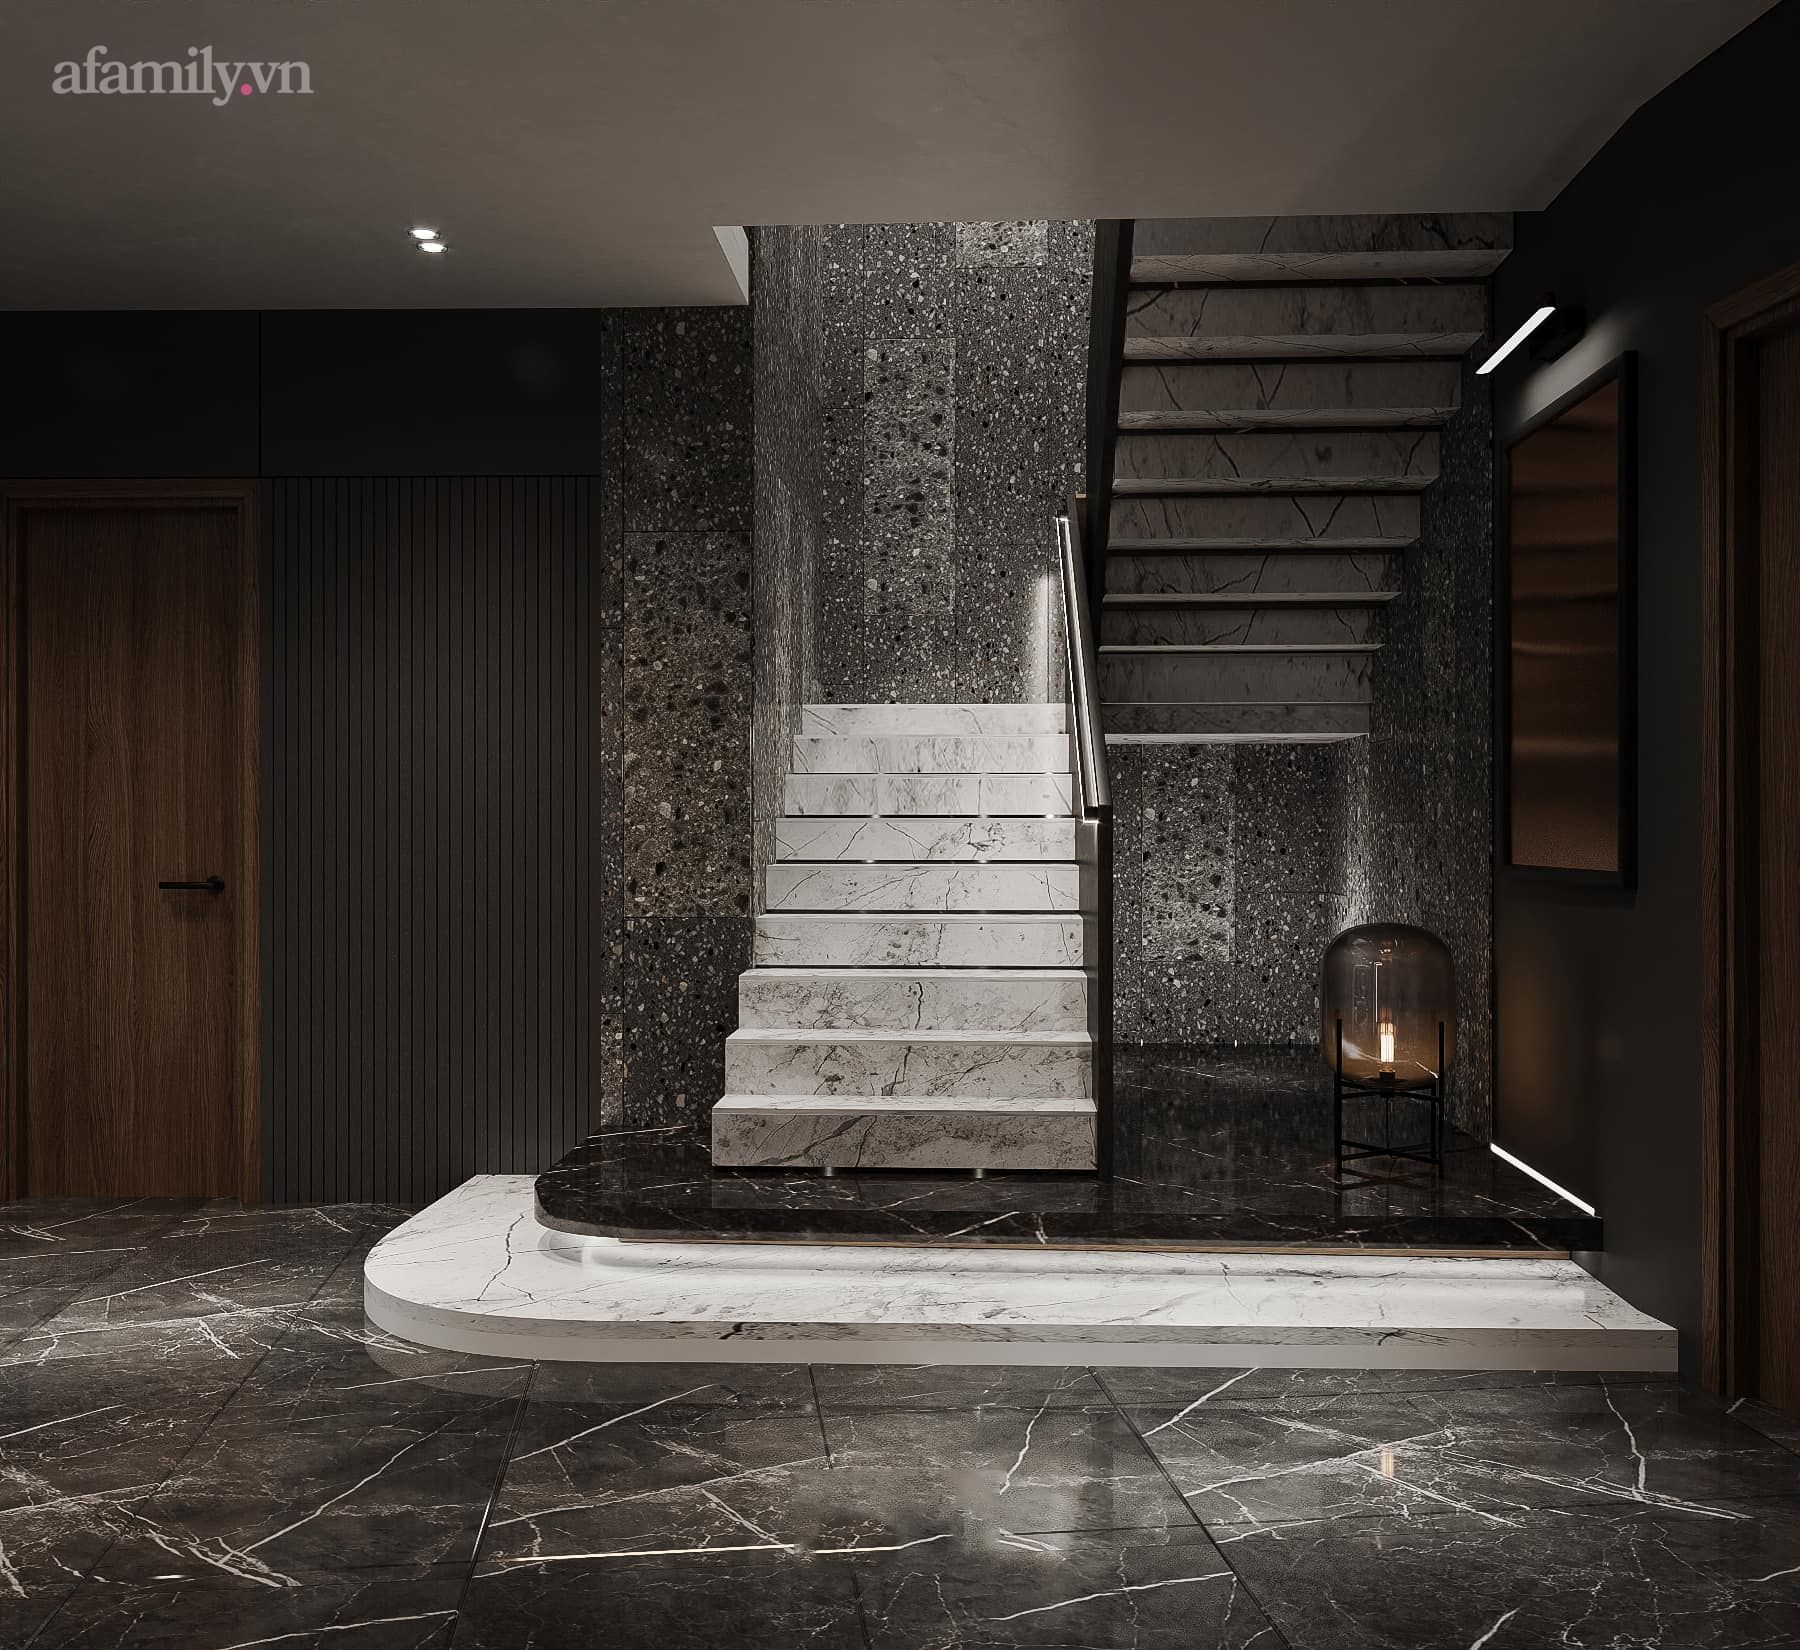 Căn penthouse duplex của nữ CEO Hà Nội bao trọn view sông Hồng, thiết kế luxury hiện đại tone chủ đạo nâu đen cực huyền bí - Ảnh 13.